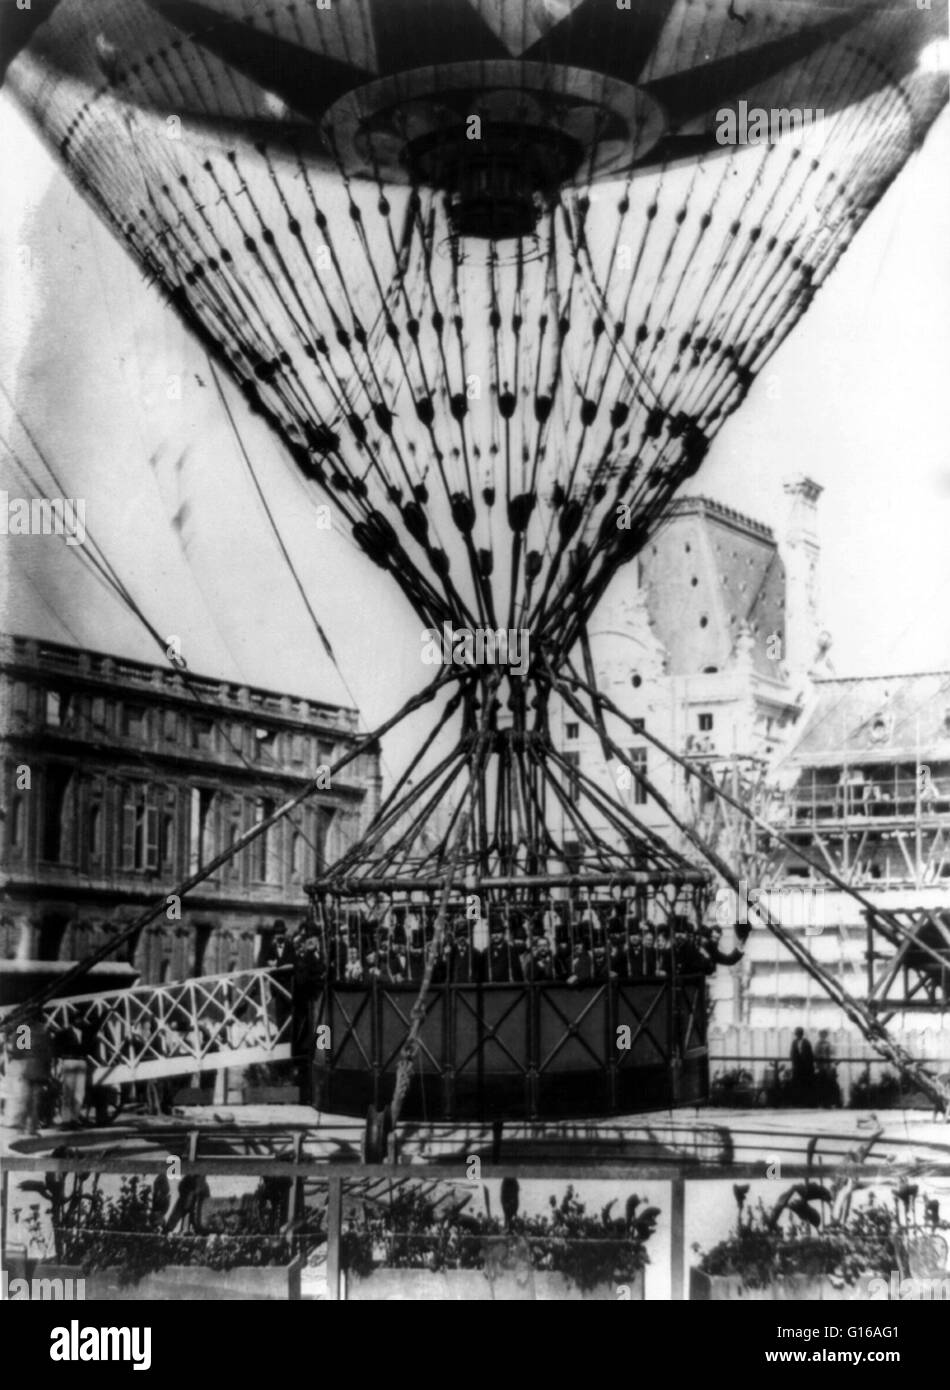 Fotografia del gigante pallone frenato con passeggeri costruite da Henri Giffard, 1878. Henri Giffard (8 febbraio 1825 - 14 Aprile 1882) era un ingegnere francese. Ha inventato l'iniettore e il Giffard dirigibile, un dirigibile alimentato con un motore a vapore Foto Stock